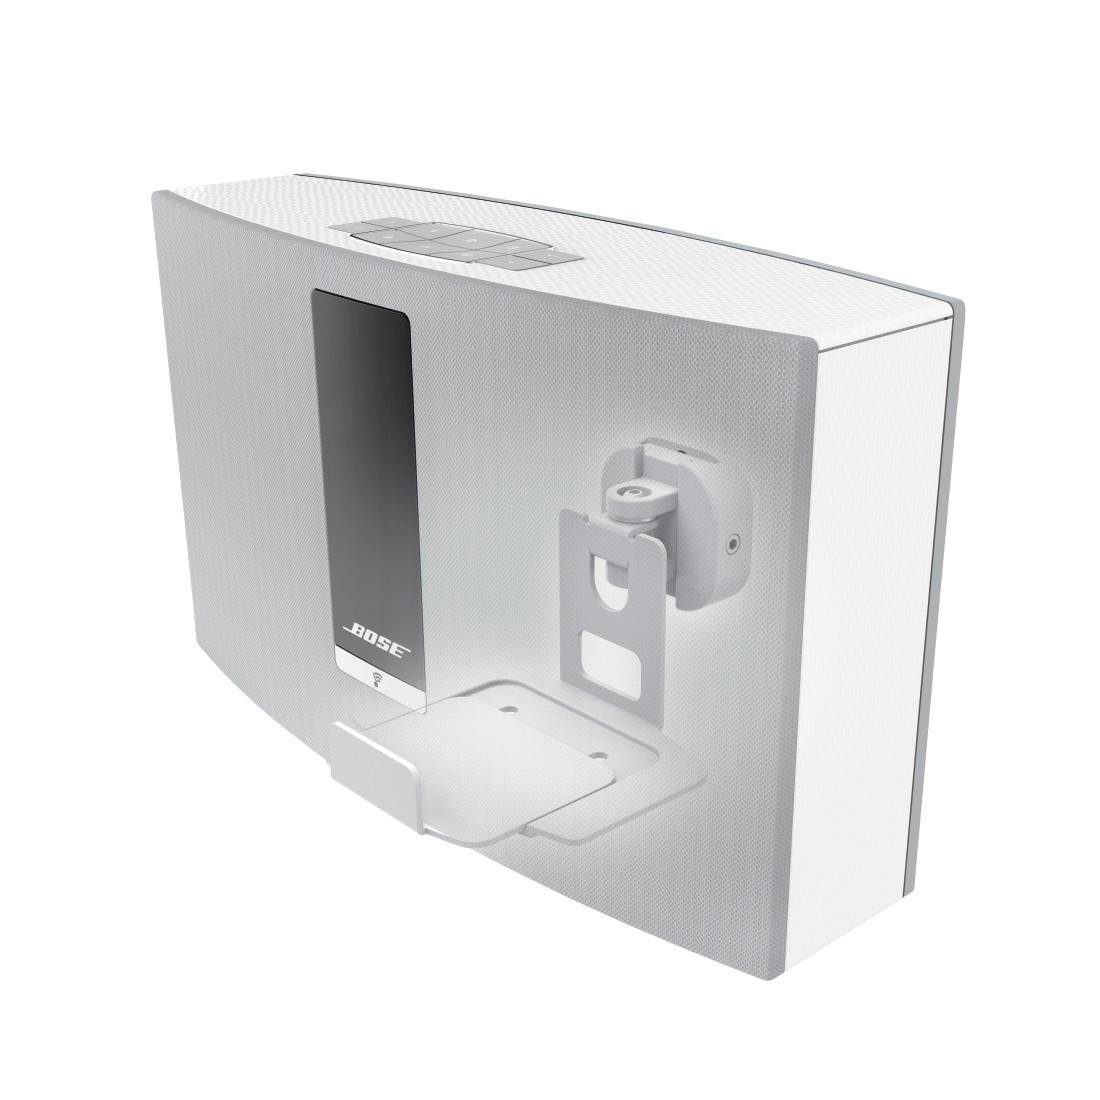 Hama »Wandhalterung für Bose Soundtouch 10/20 schwenkbar, weiß Lautsprecher  Halter« Lautsprecher-Wandhalterung online kaufen | OTTO